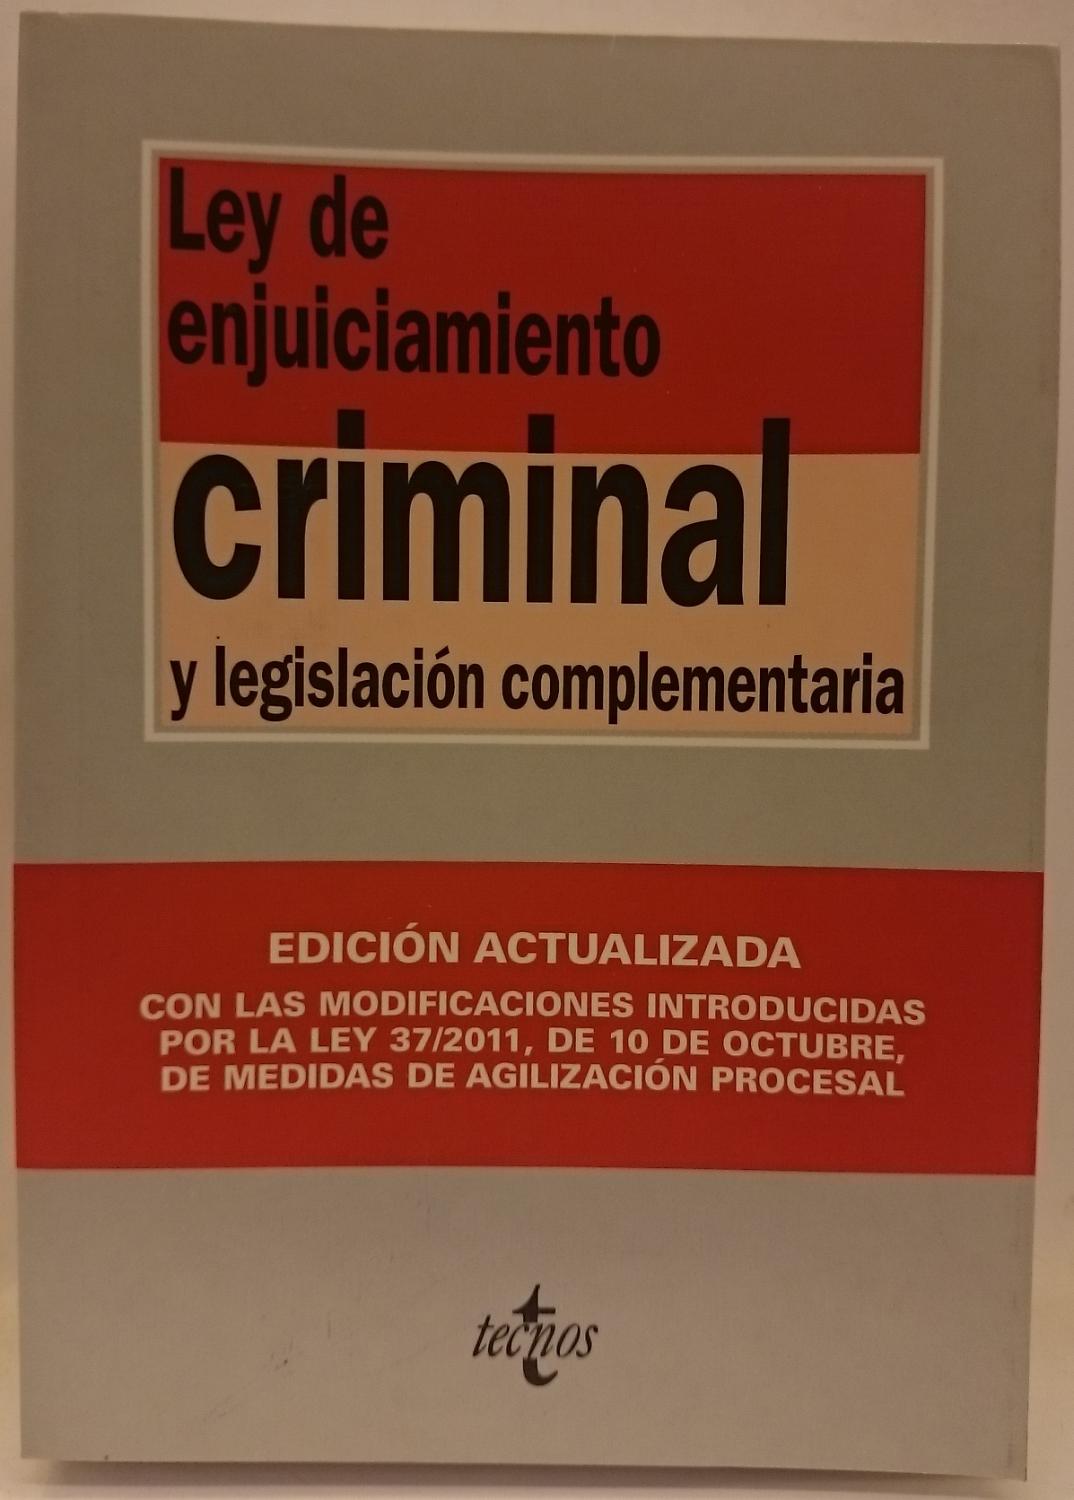 Ley de enjuiciamiento criminal y legislación complementaria. Edición actualizada oct. 2011 - Equipo Editorial